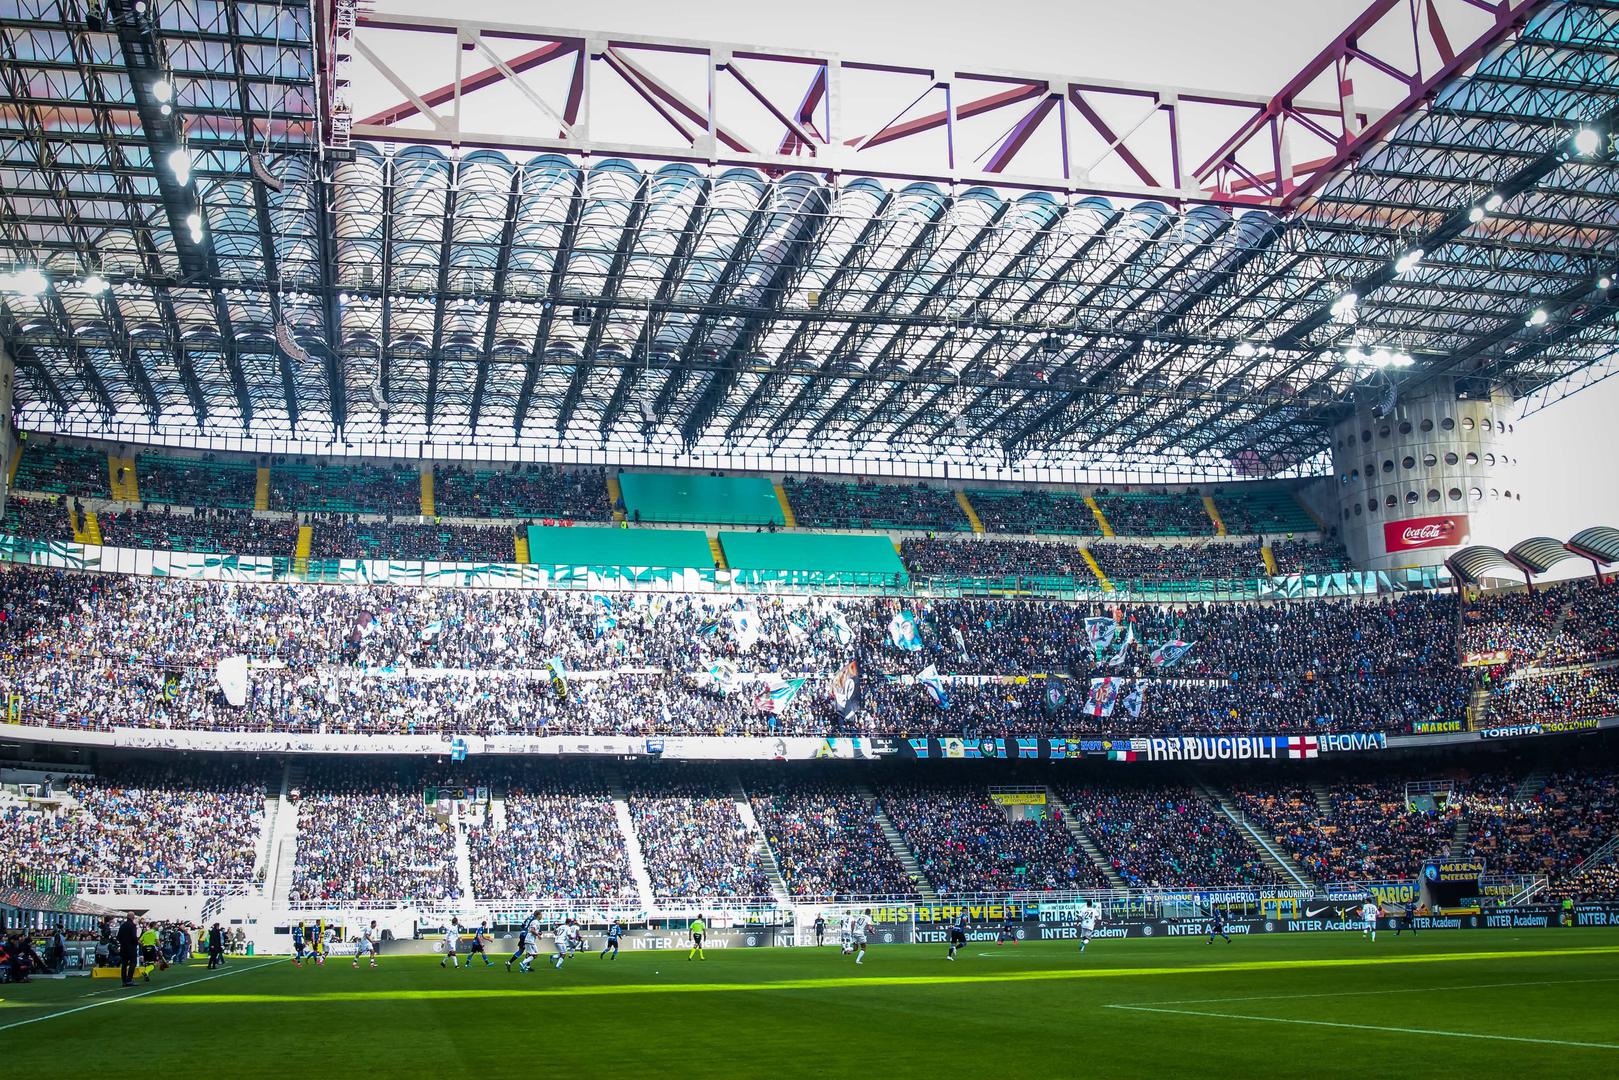 Postojeći stadion ima 80.018 sjedeći mjesta i jedan je od najvećih u Europi, pa je sasvim razumljiva nesigurnost klubova